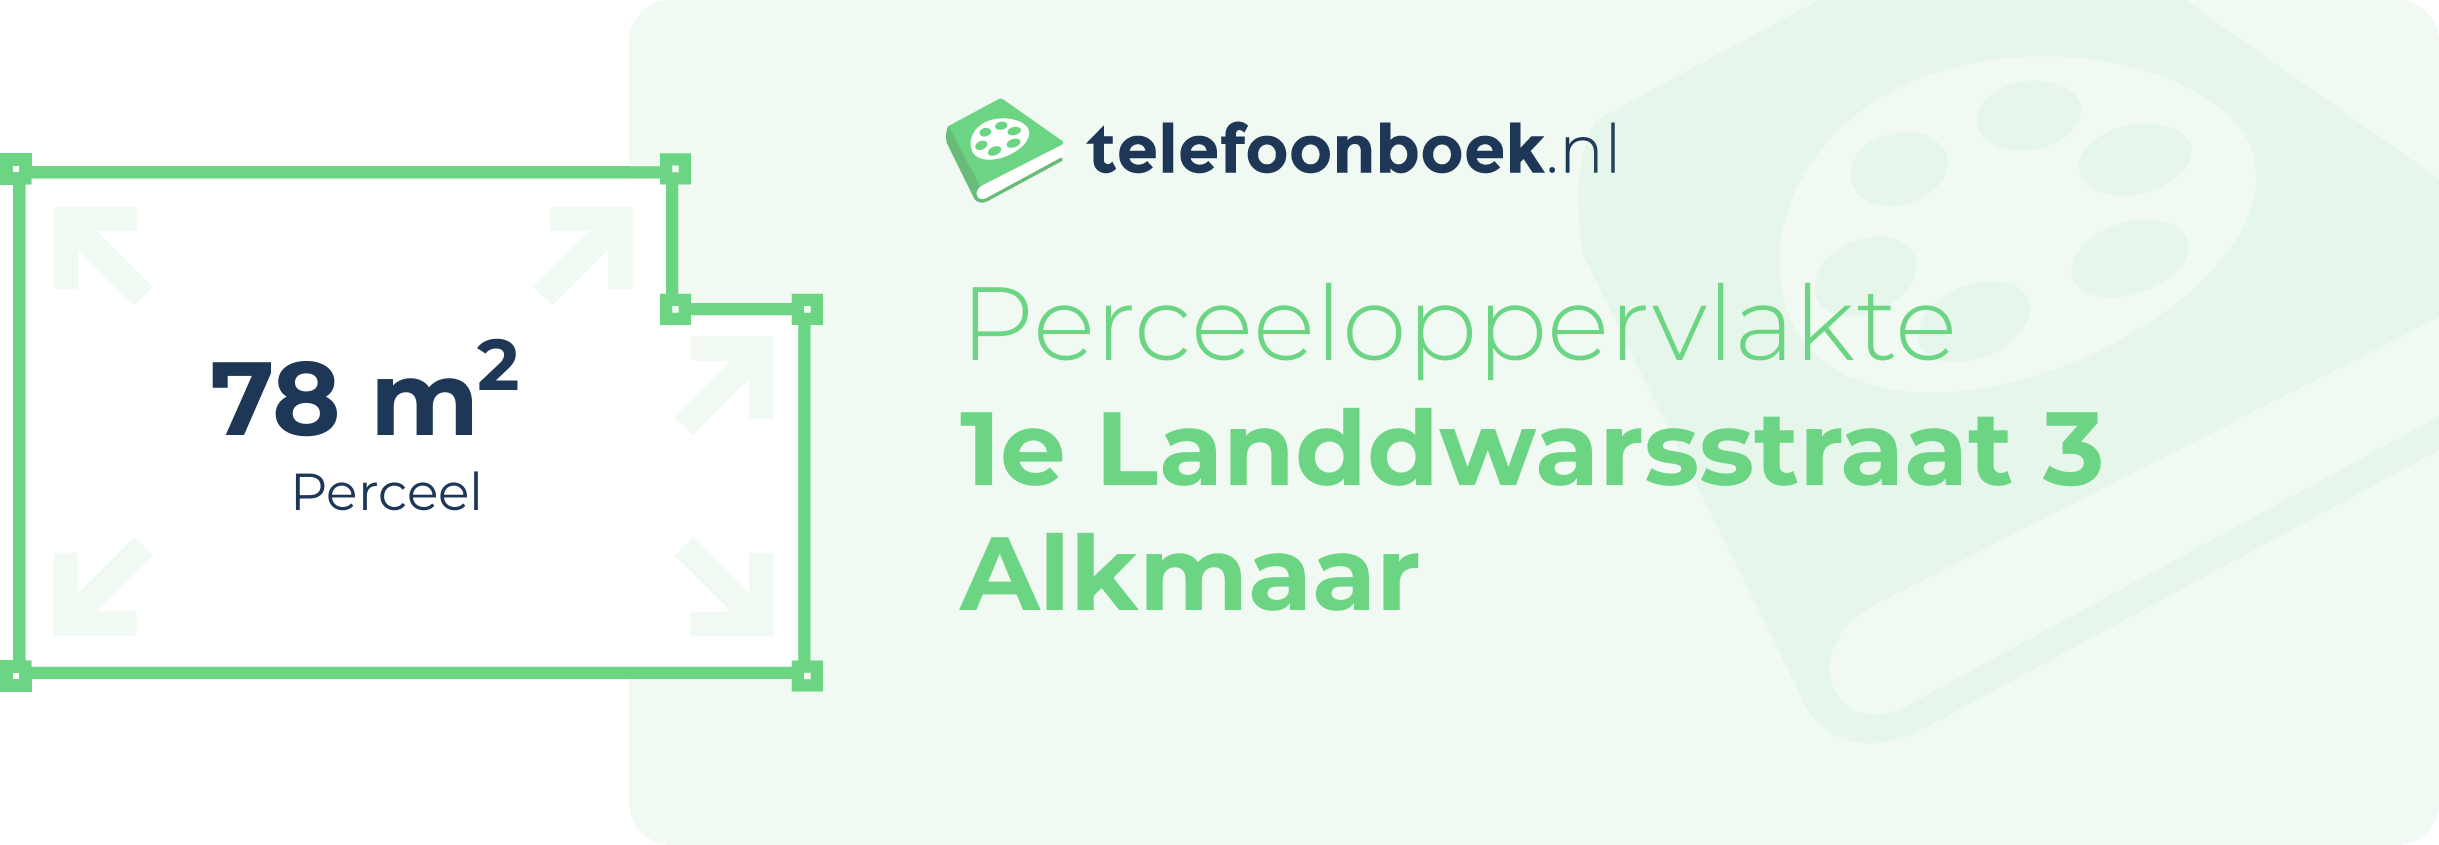 Perceeloppervlakte 1e Landdwarsstraat 3 Alkmaar